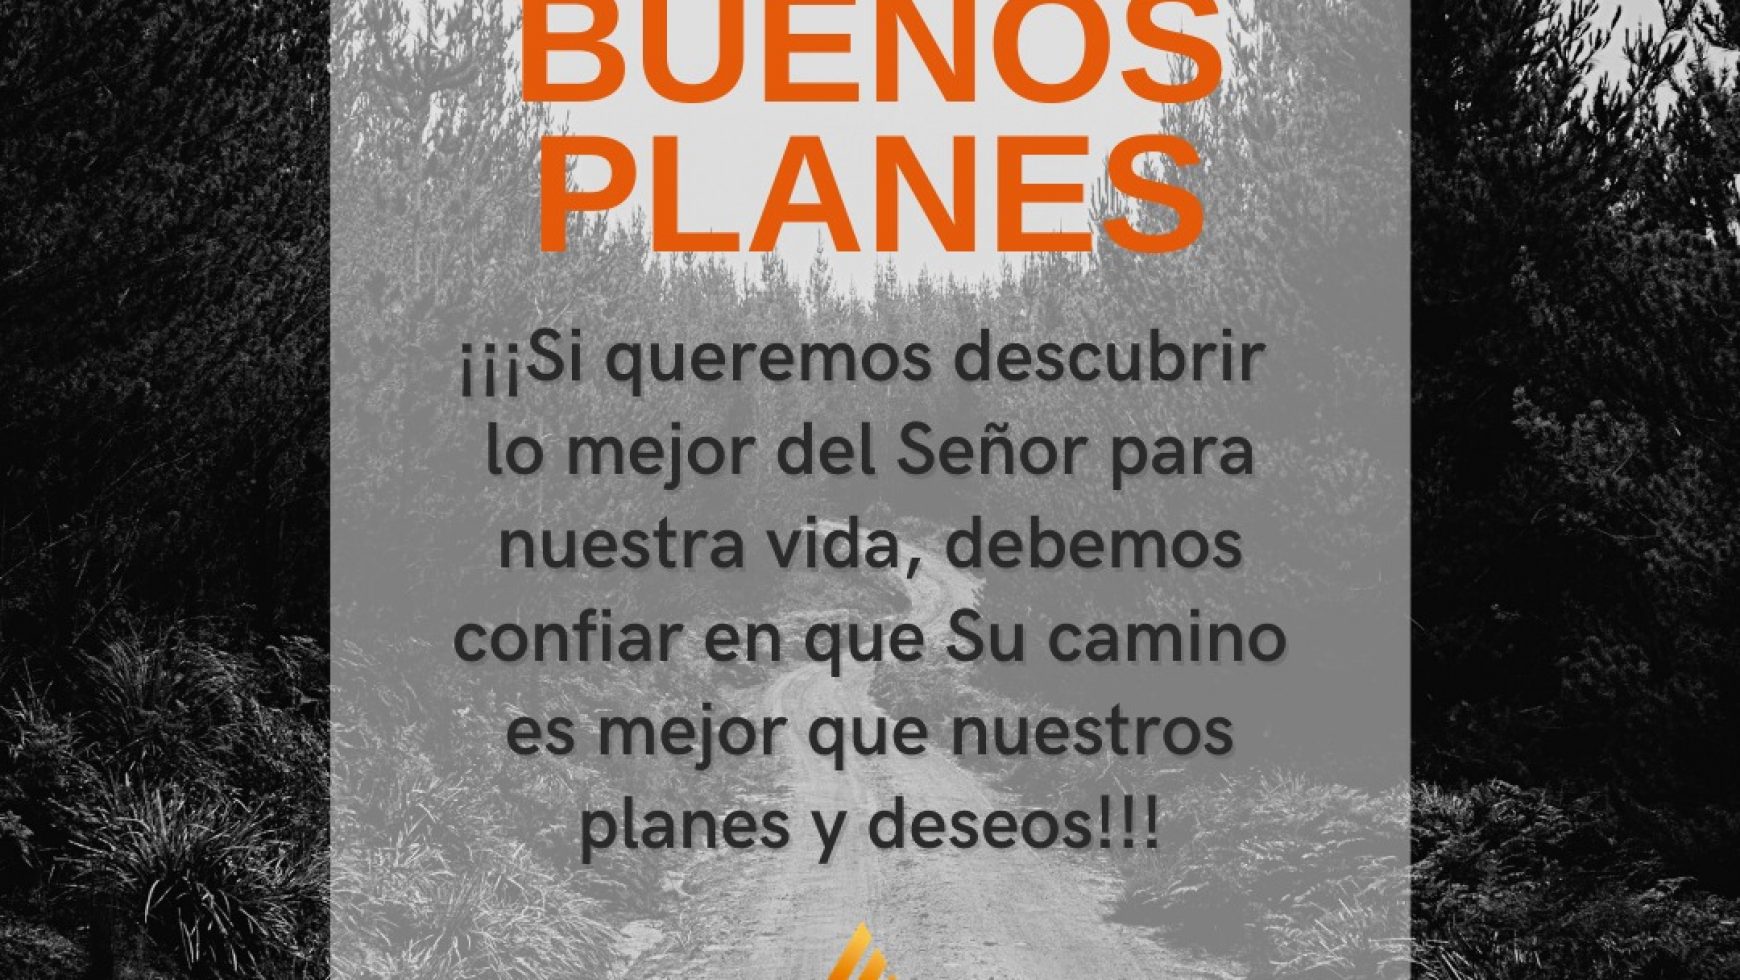 BUENOS PLANES